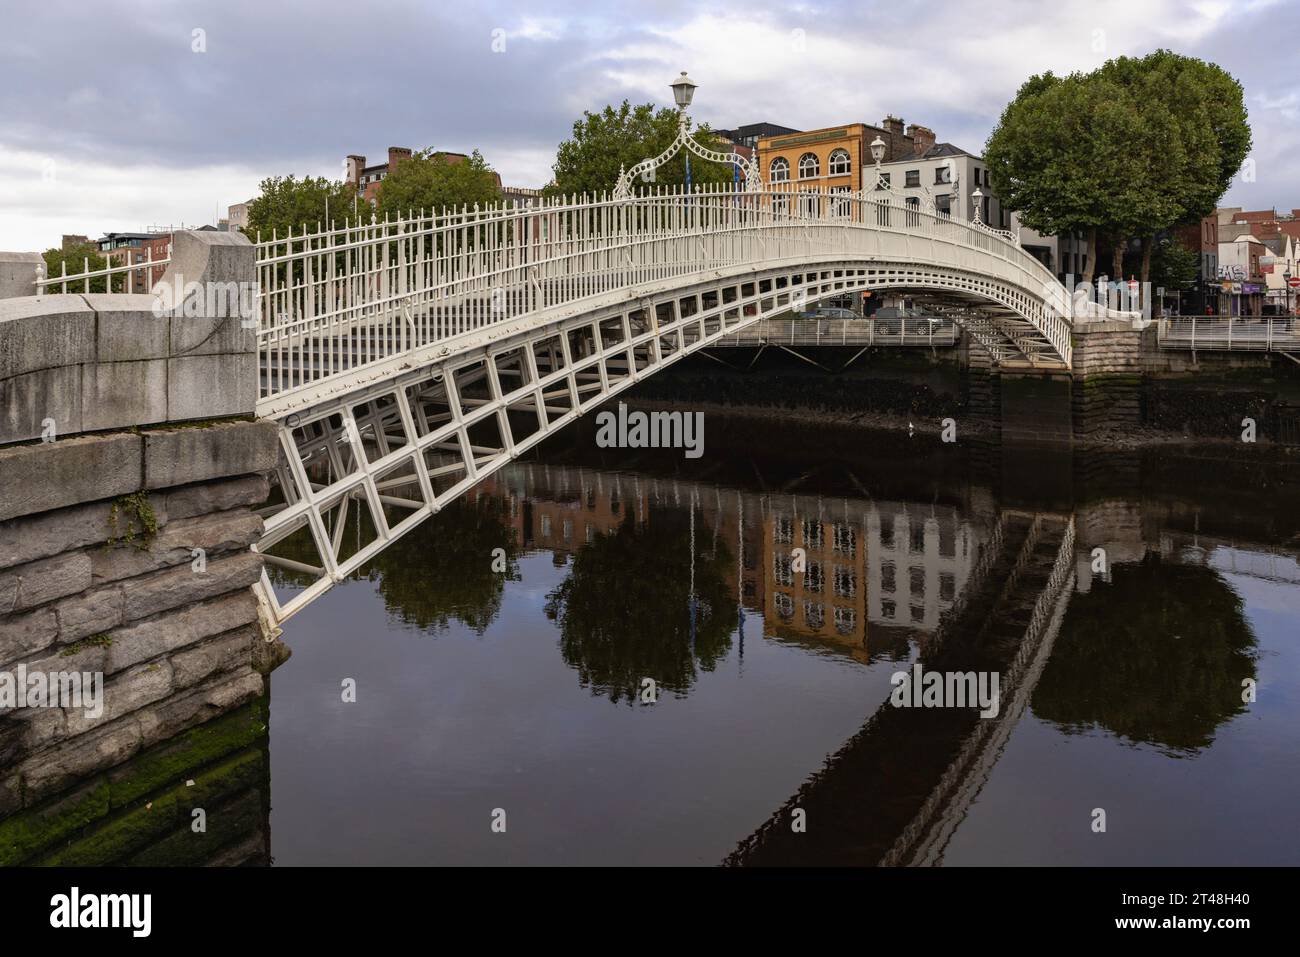 Ha'penny Bridge est un pont piétonnier sur la rivière Liffey à Dublin, en Irlande, connu pour son beau design en fonte et son statut emblématique. Banque D'Images